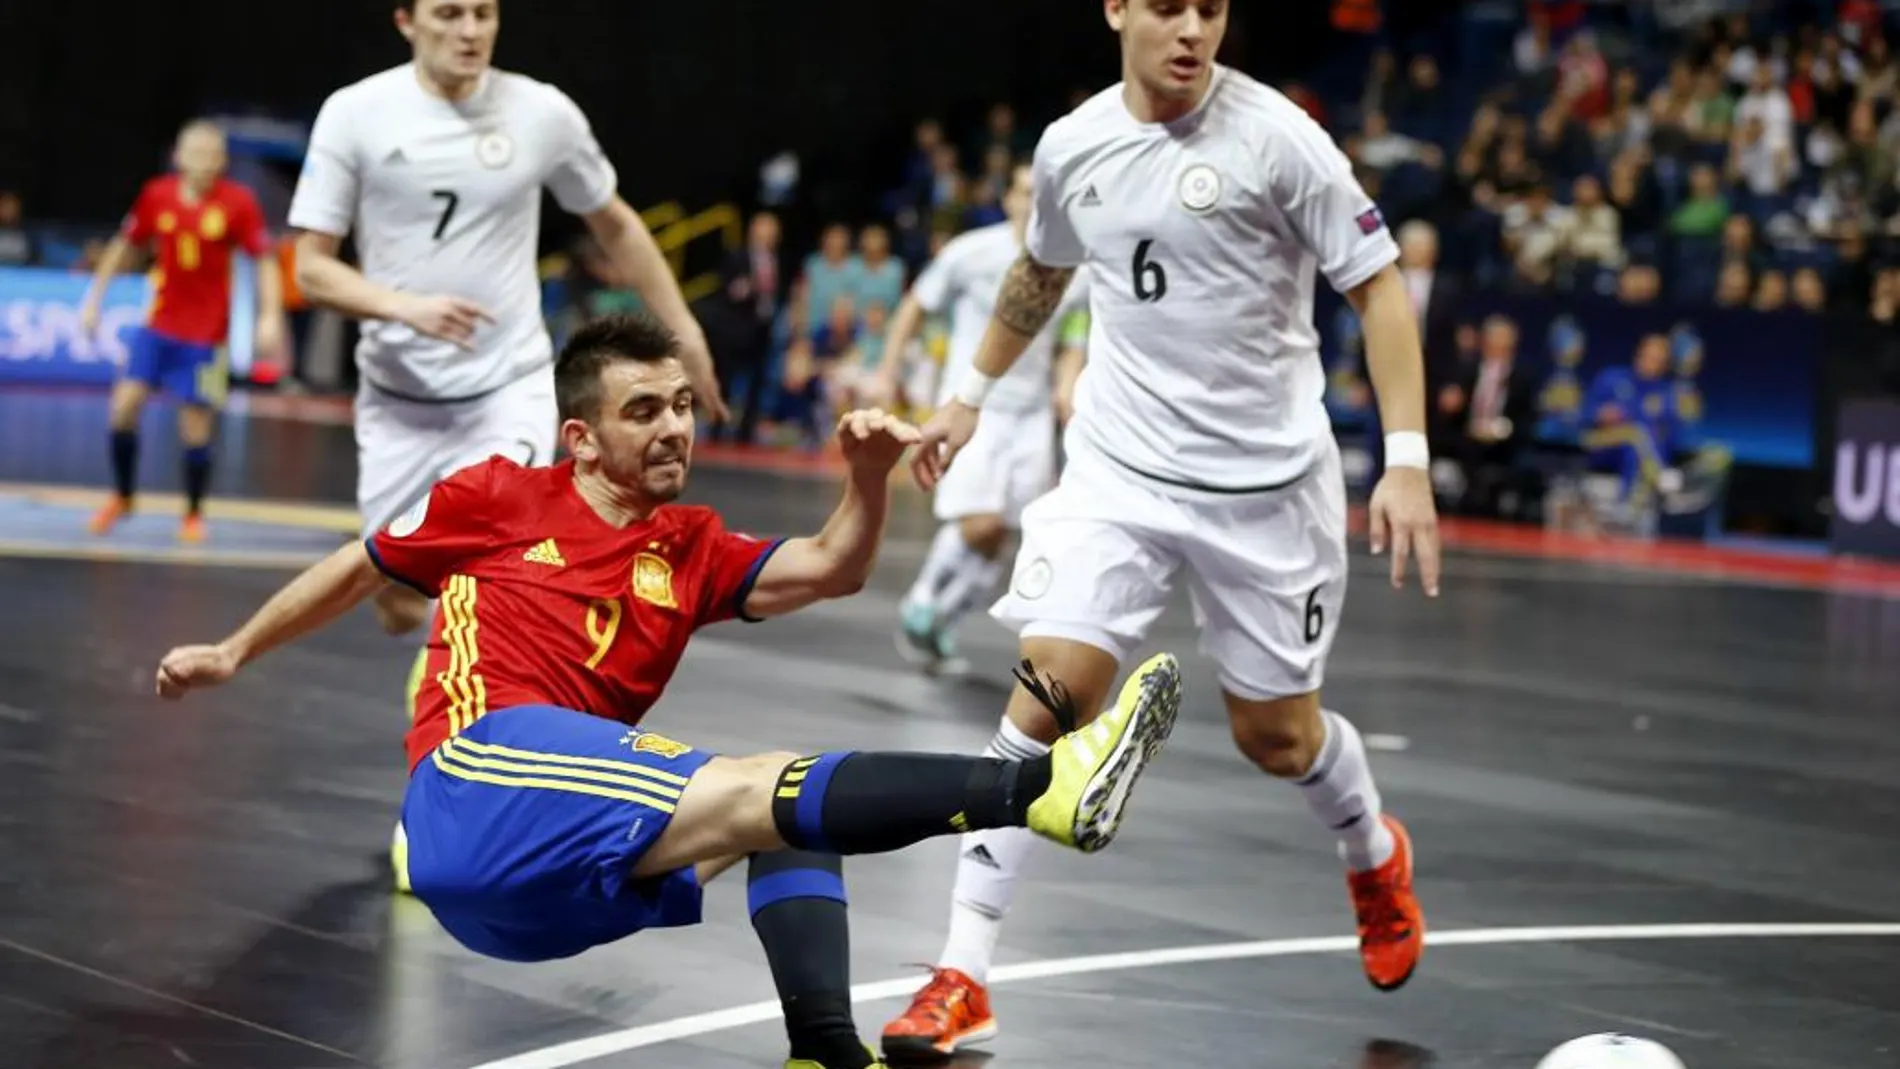 Fotografía facilitada por la Federación Española de Fútbol del jugador de la selección española Álex (c) chutando ante dos jugadores de Kazajistán, durante el partido de las semifinales